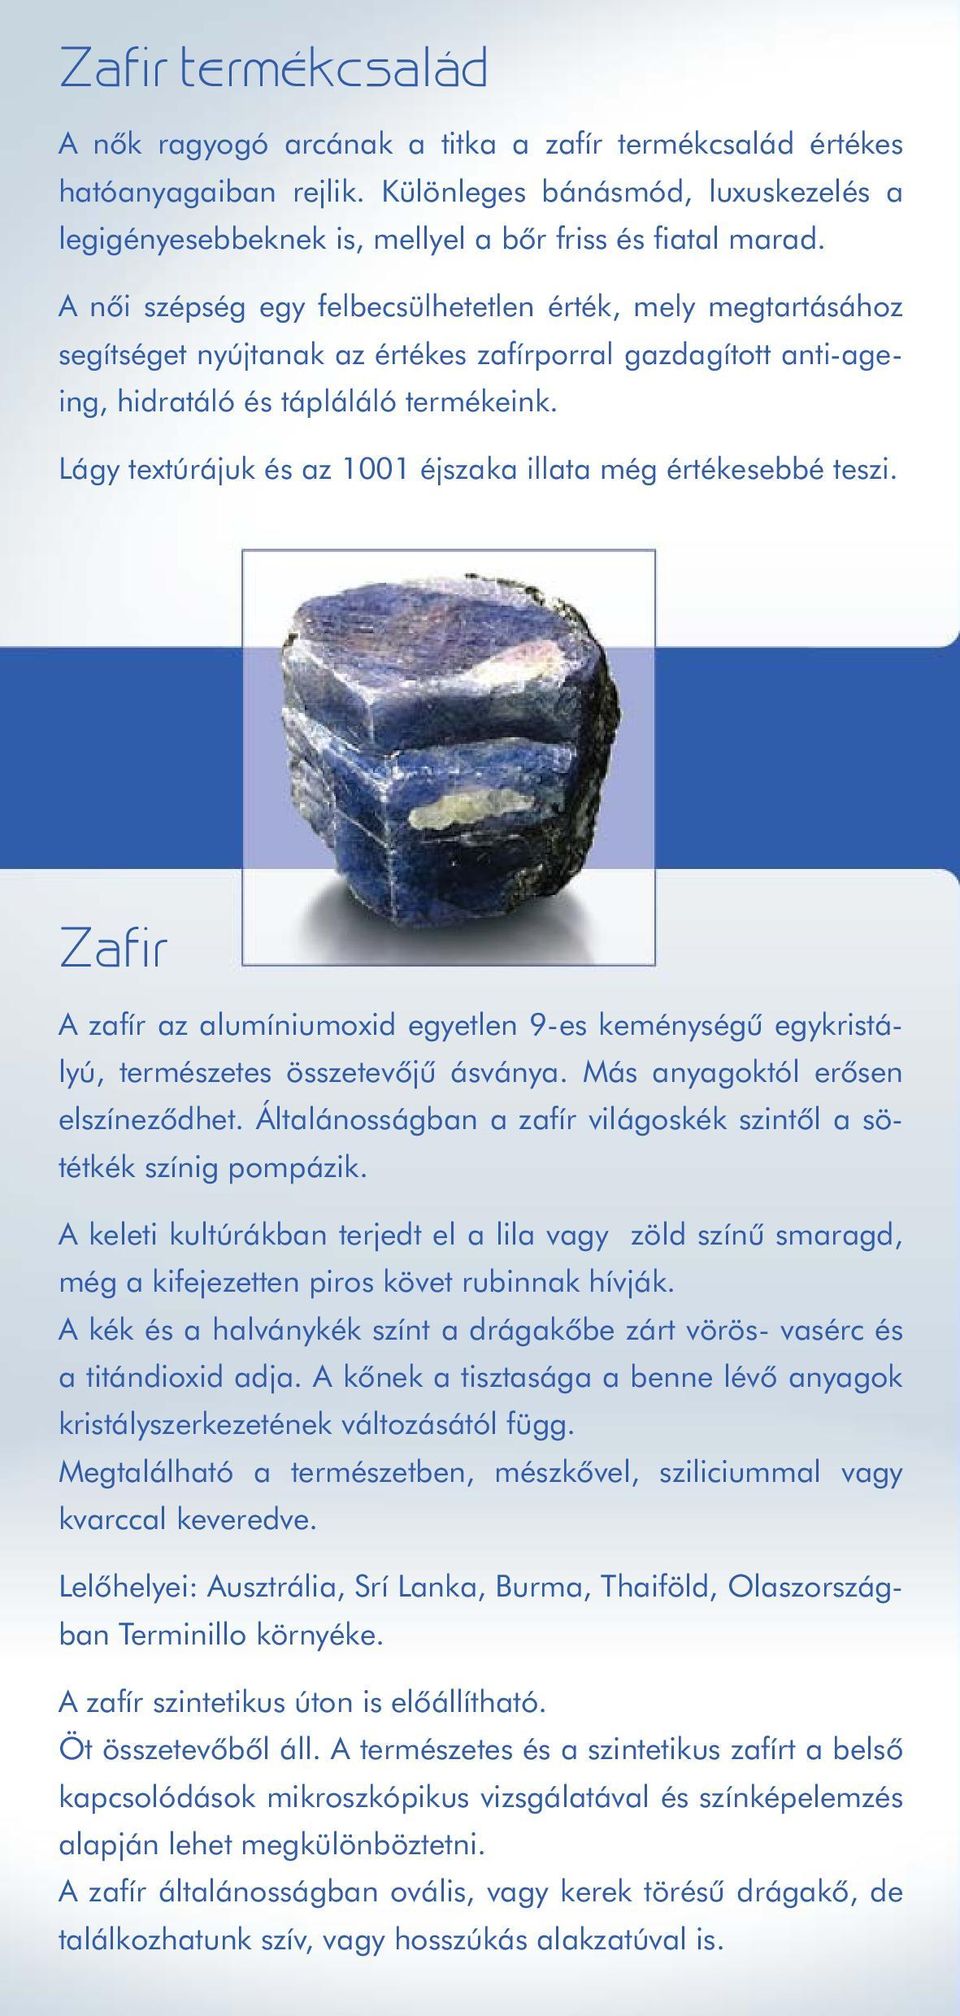 Lágy textúrájuk és az 1001 éjszaka illata még értékesebbé teszi. Zafir A zafír az alumíniumoxid egyetlen 9-es keménységû egykristályú, természetes összetevôjû ásványa.